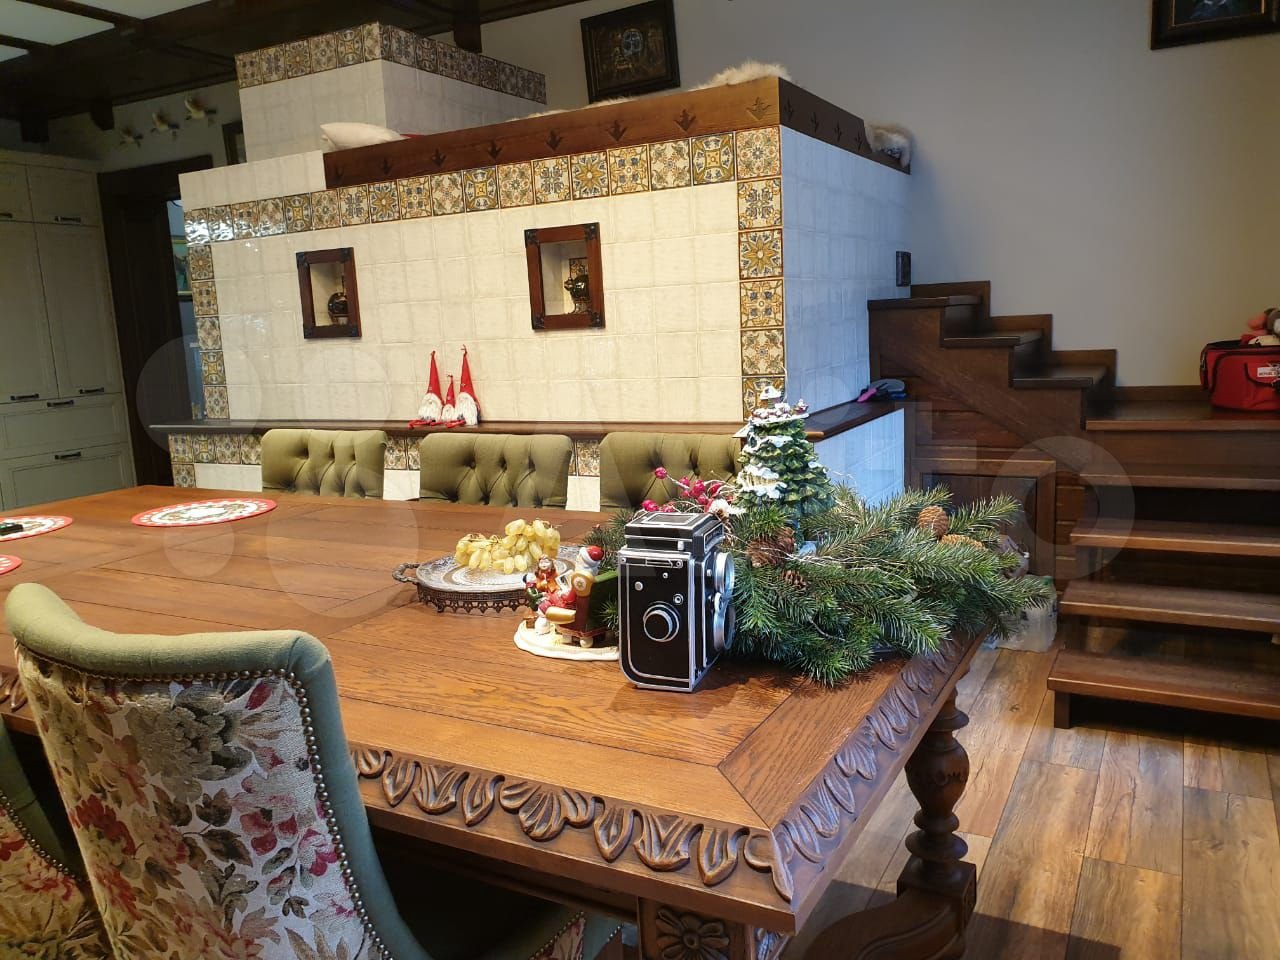 Роскошный коттедж-замок с лежанкой на печи продают в Барнауле